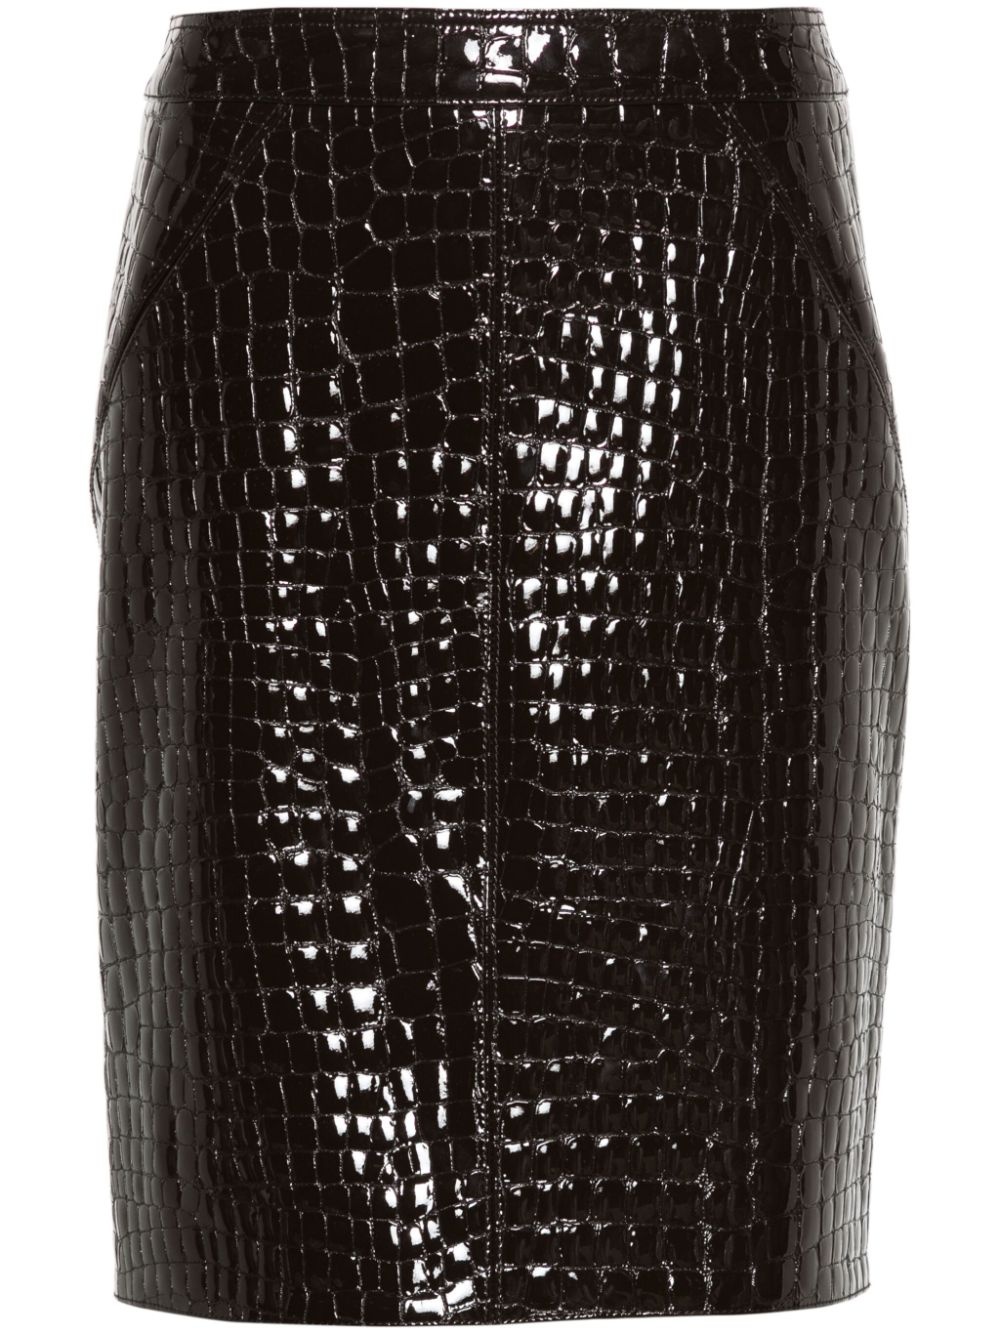 crocodile-embossed leather skirt - 1